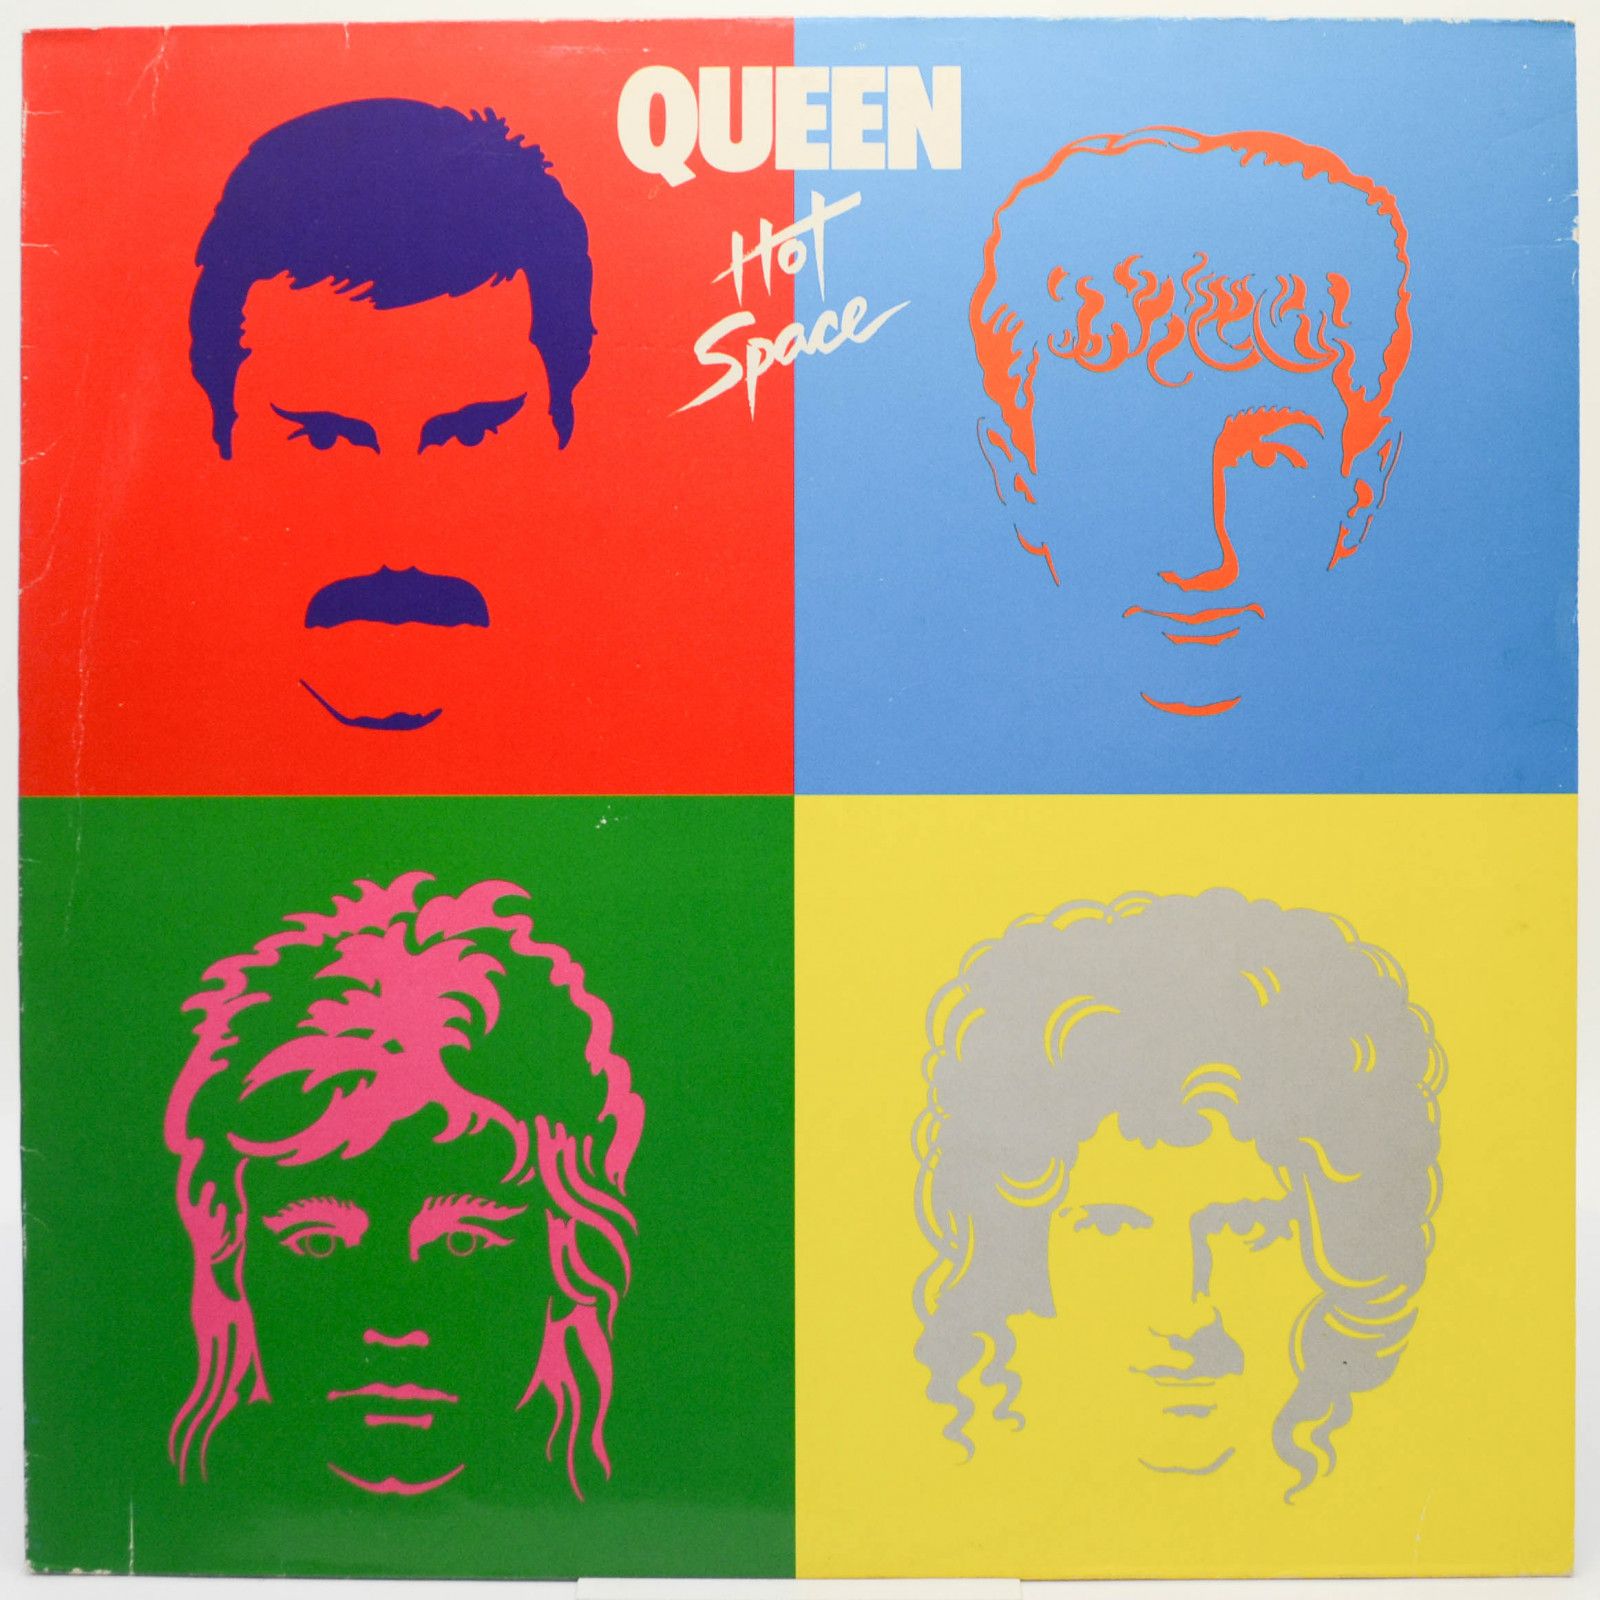 Queen — Hot Space, 1982